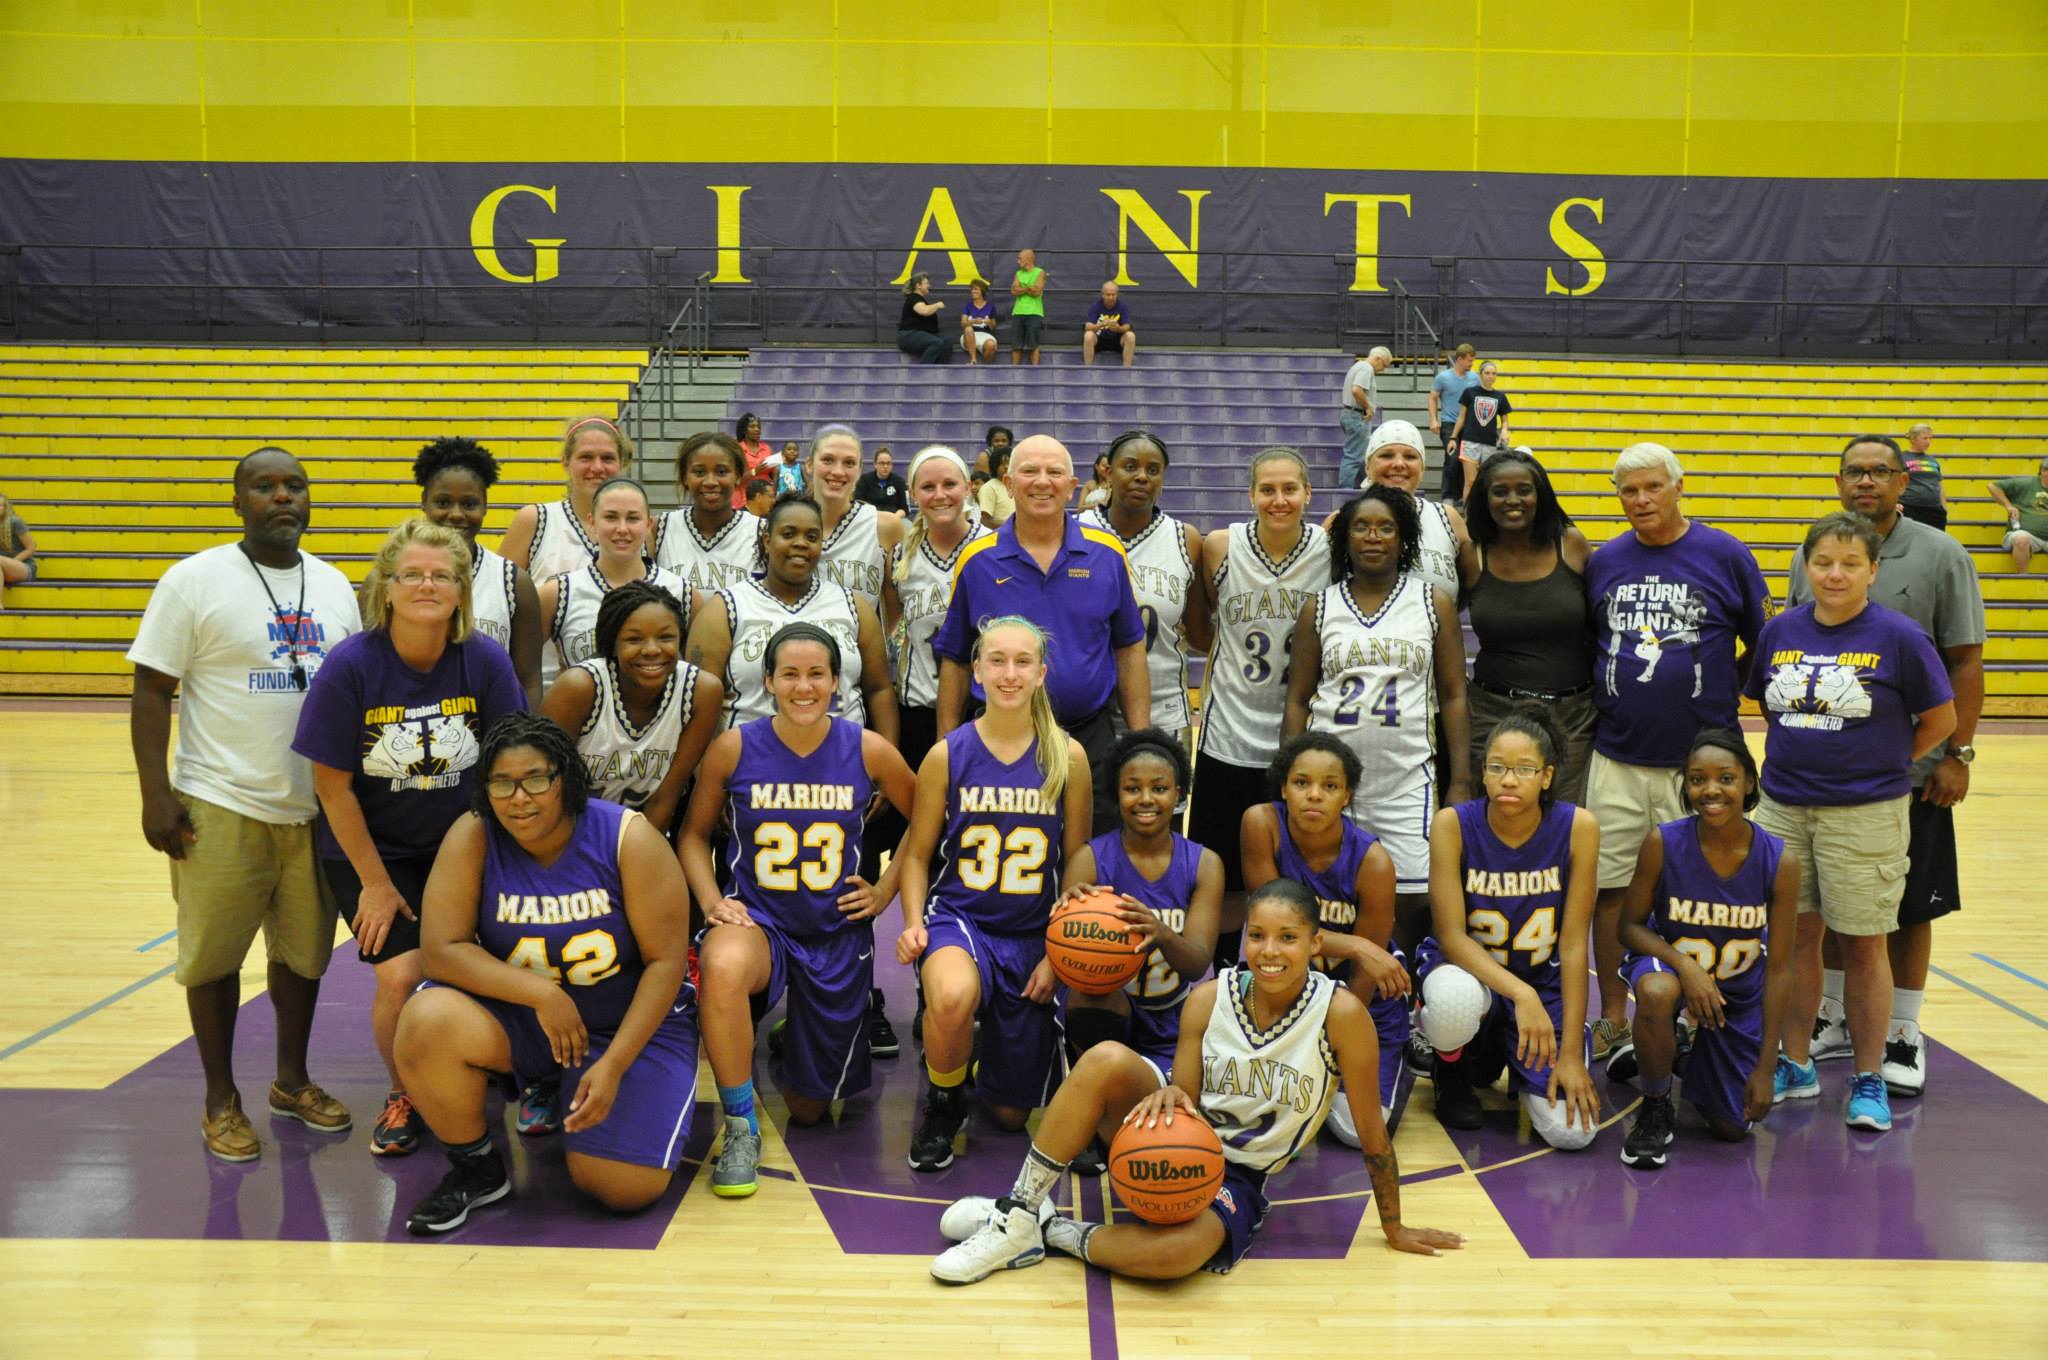 Giant Challenge 2015 girls basketball teams